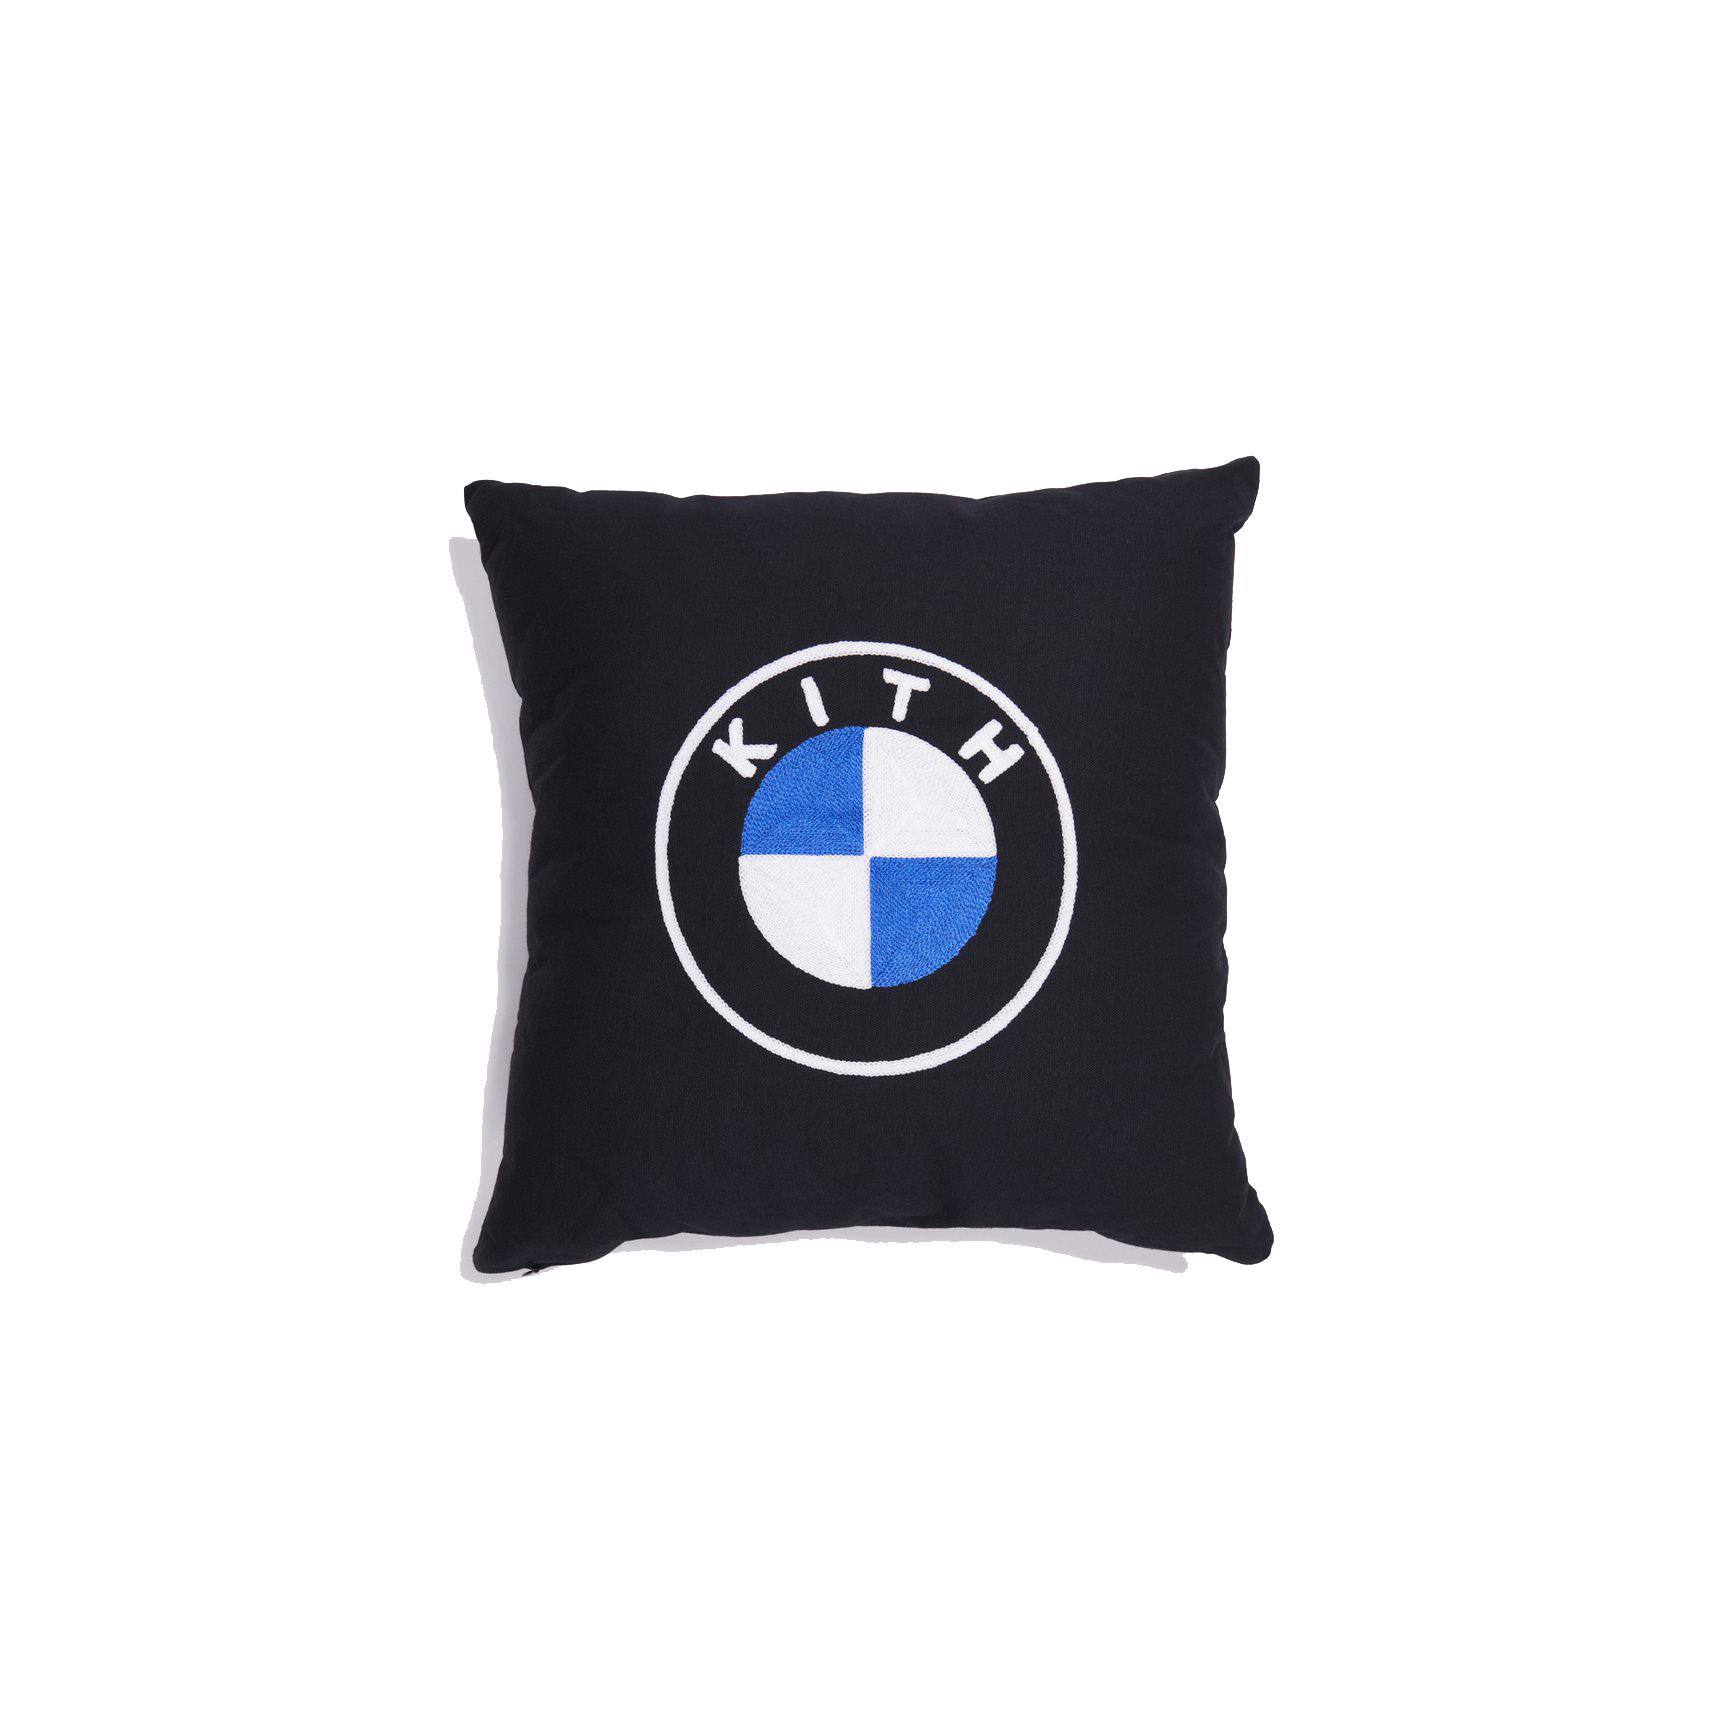 Kith x BMW Pillow Black - FW20